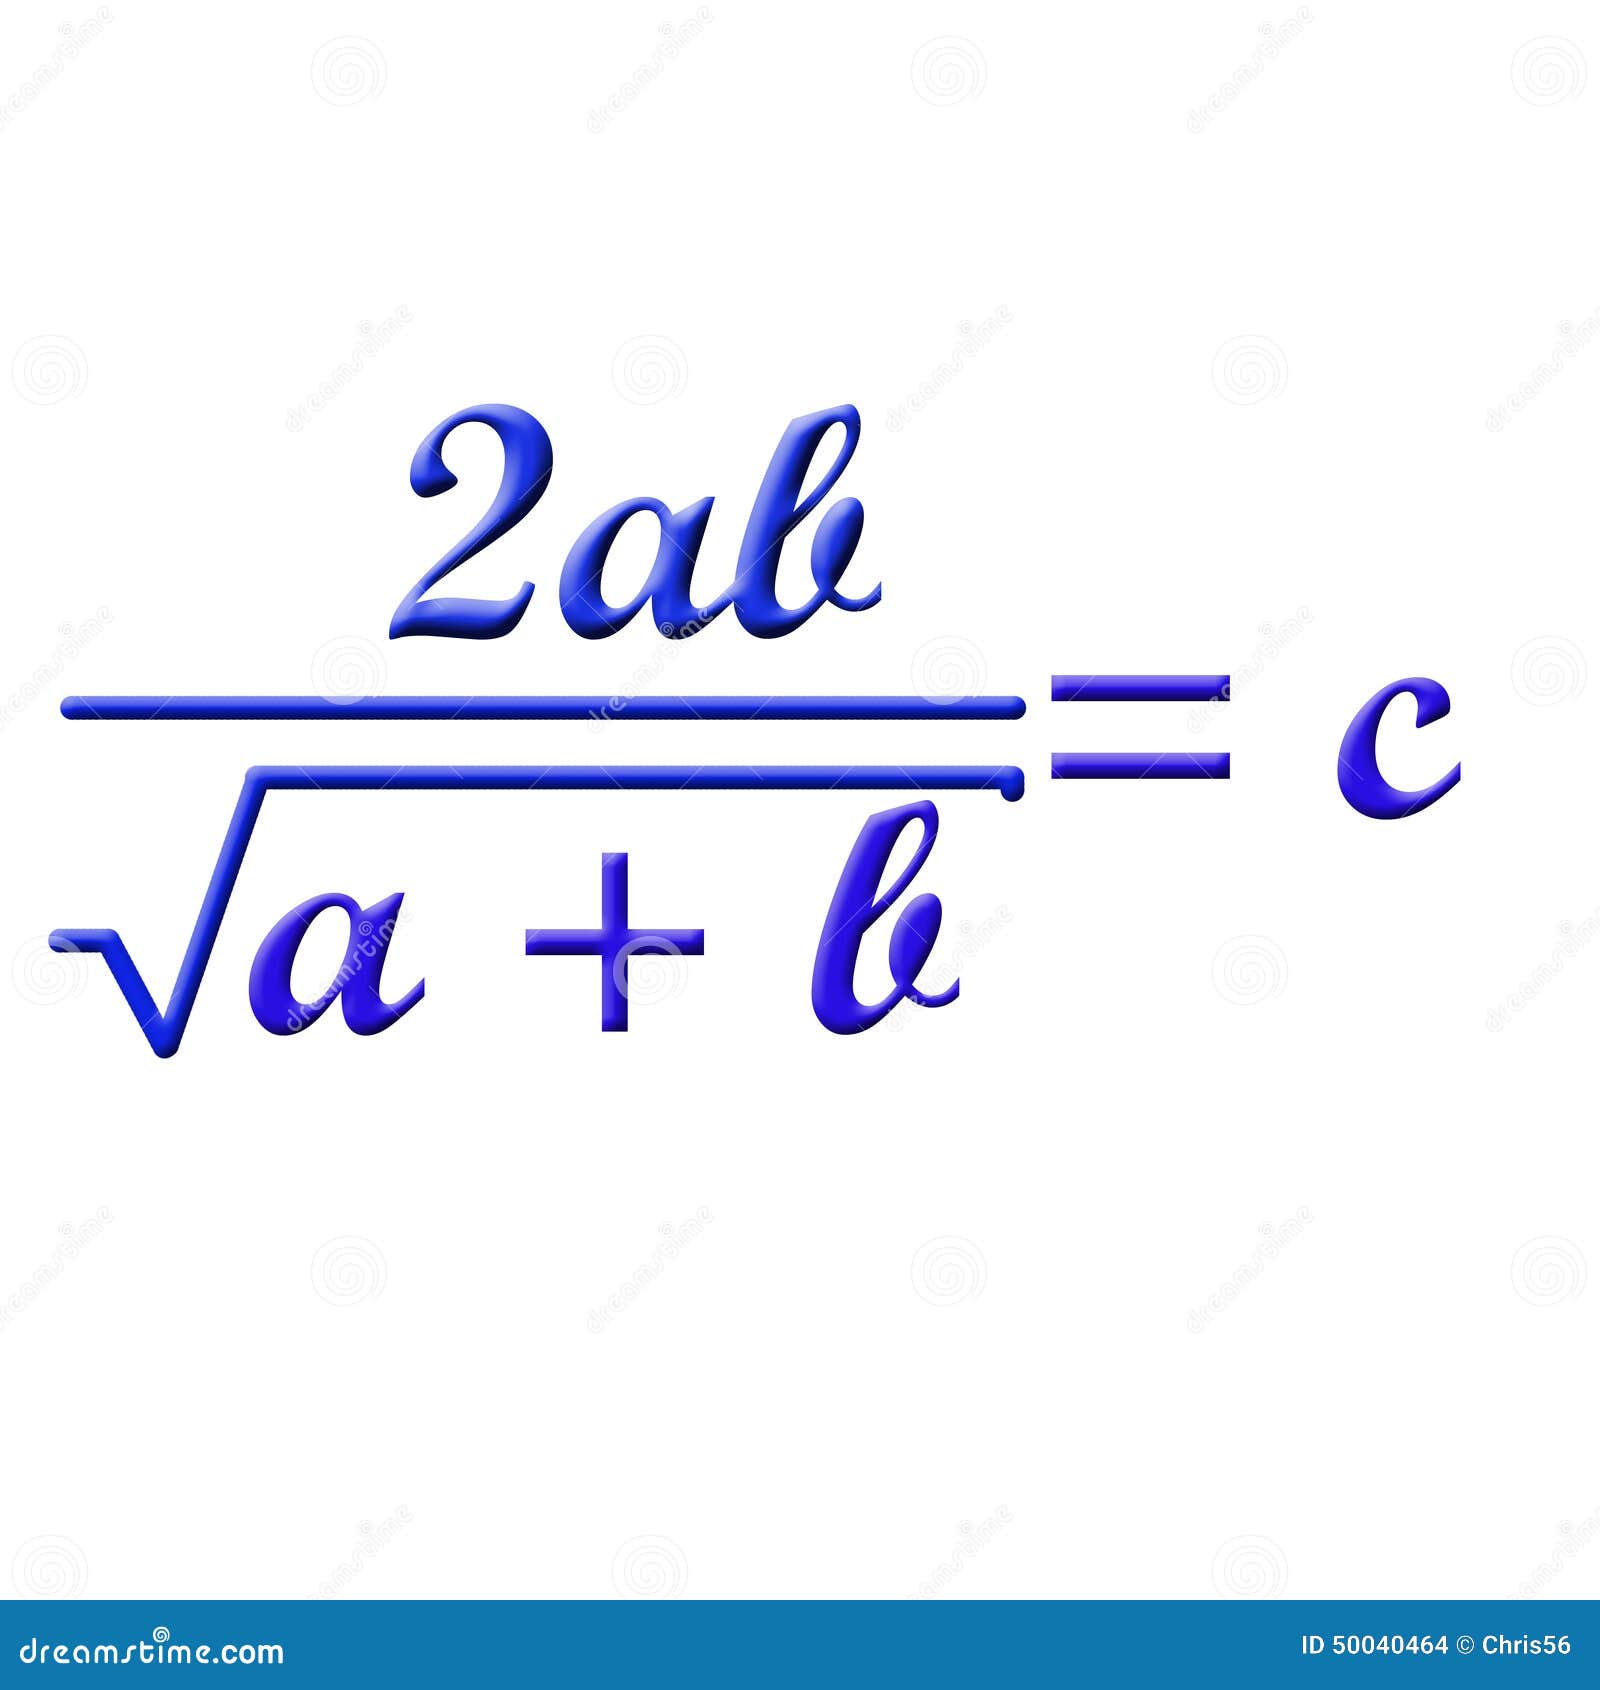 Цветные формулы. Математические формулы. Математические формулы картинки. Цветные формулы по математике. Самые известные формулы в математике.